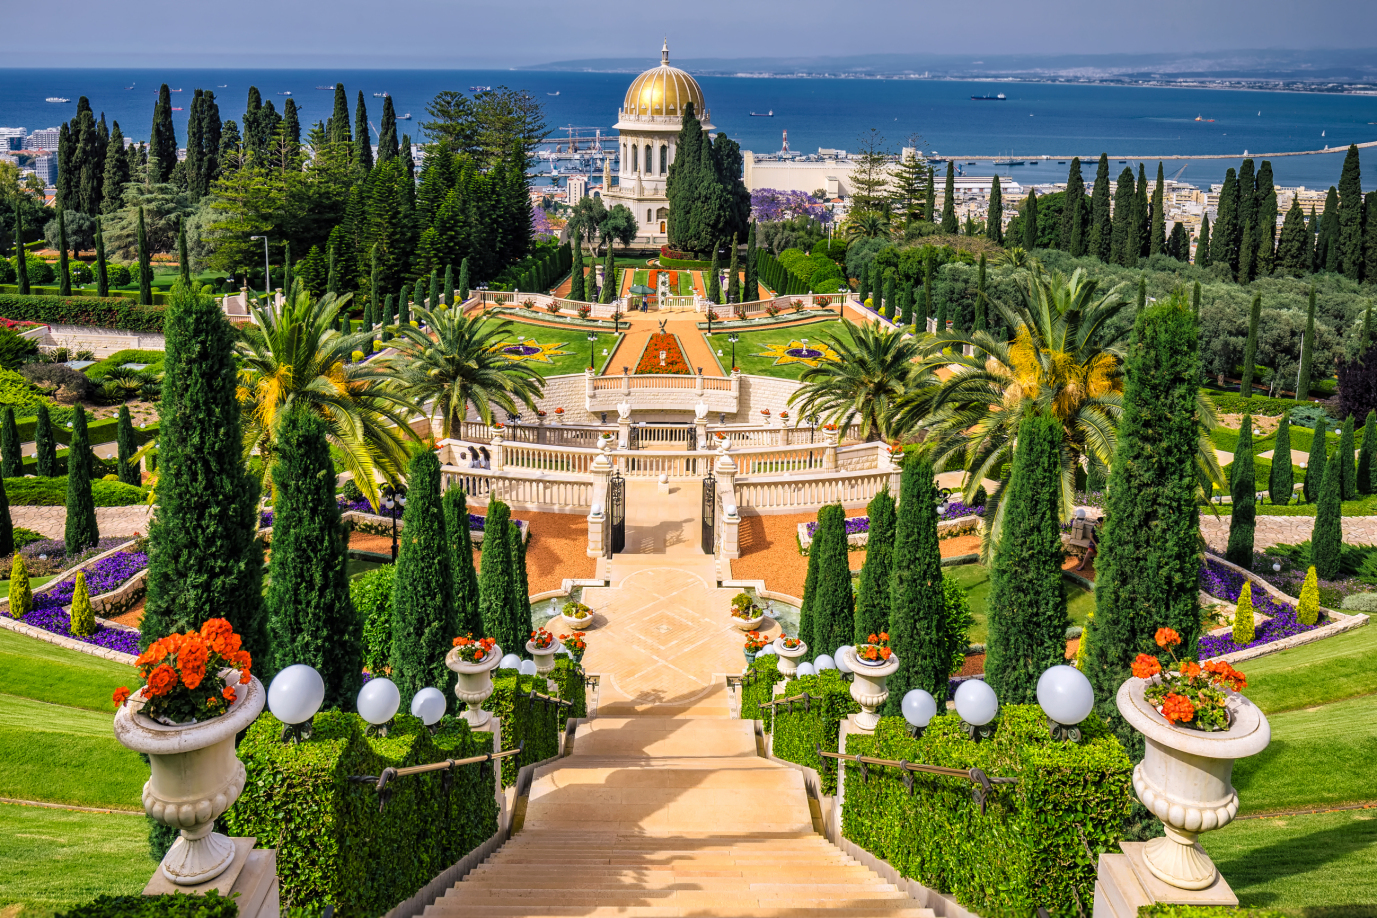 Baha'i Temple, Haifa, Israel